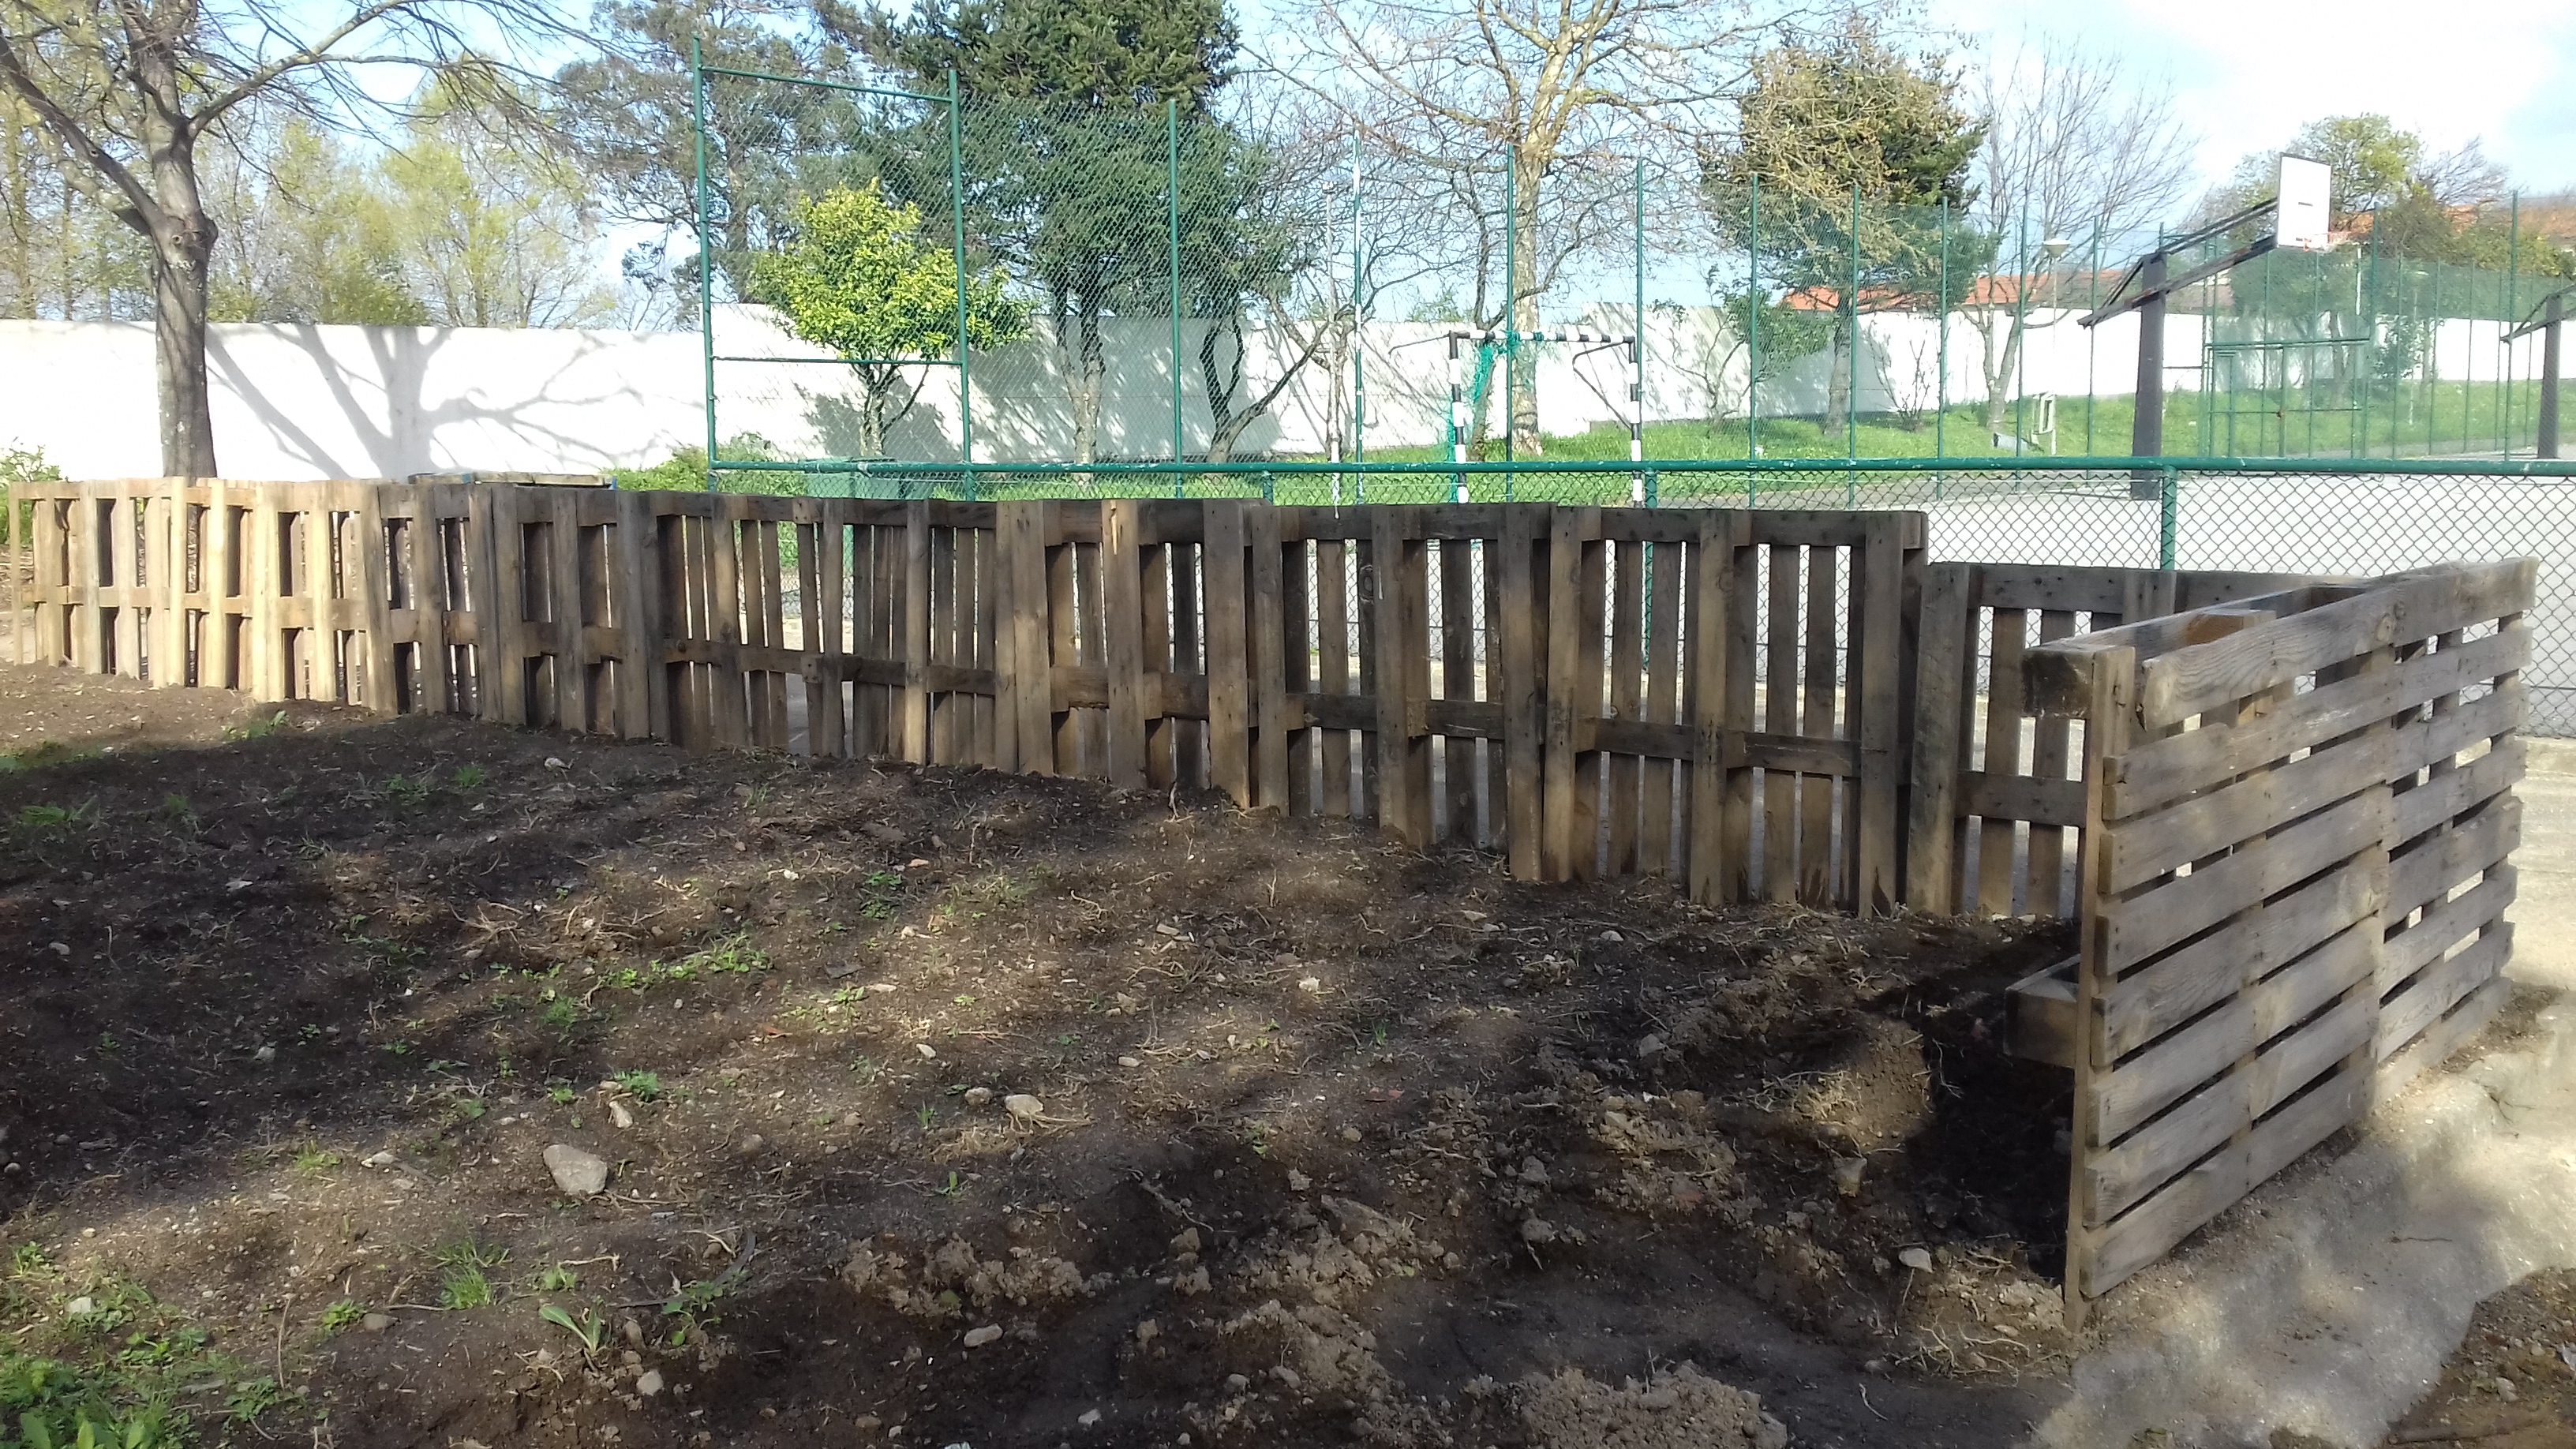 Instalação da vedação para evitar a danificação da horta. A vedação é feita com paletes usadas. Inicio da preparação do solo.